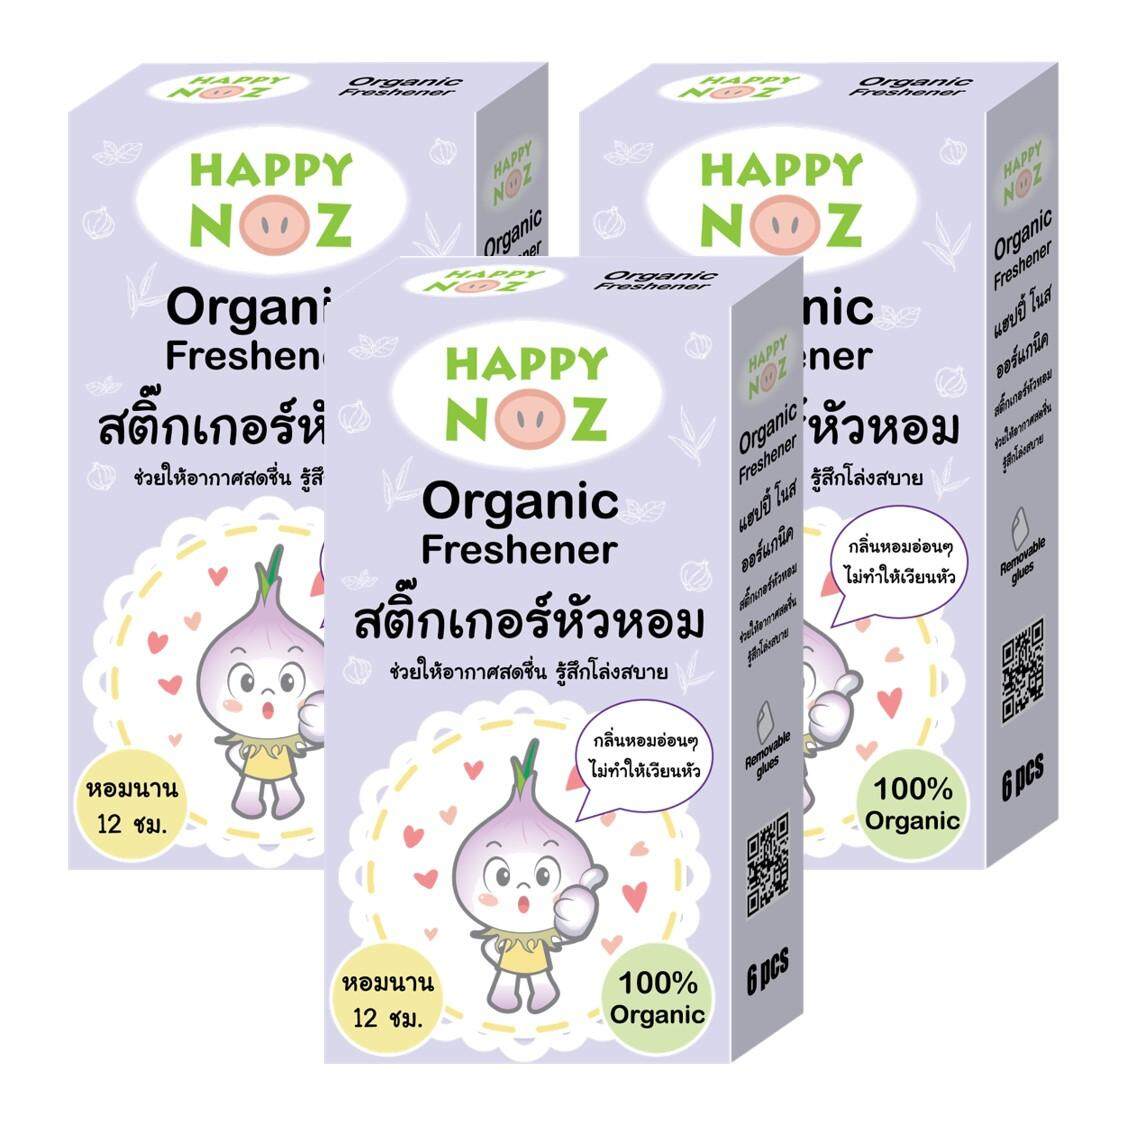 (3 กล่อง 1 กล่อง มี 6 แผ่น) สติกเกอร์หัวหอม สติ๊กเกอร์หัวหอม หัวหอม ออแกนิค100% HappyNoz (Organic Nose Freshener) แฮปปี้ โนส แผ่นแปะหัวหอม